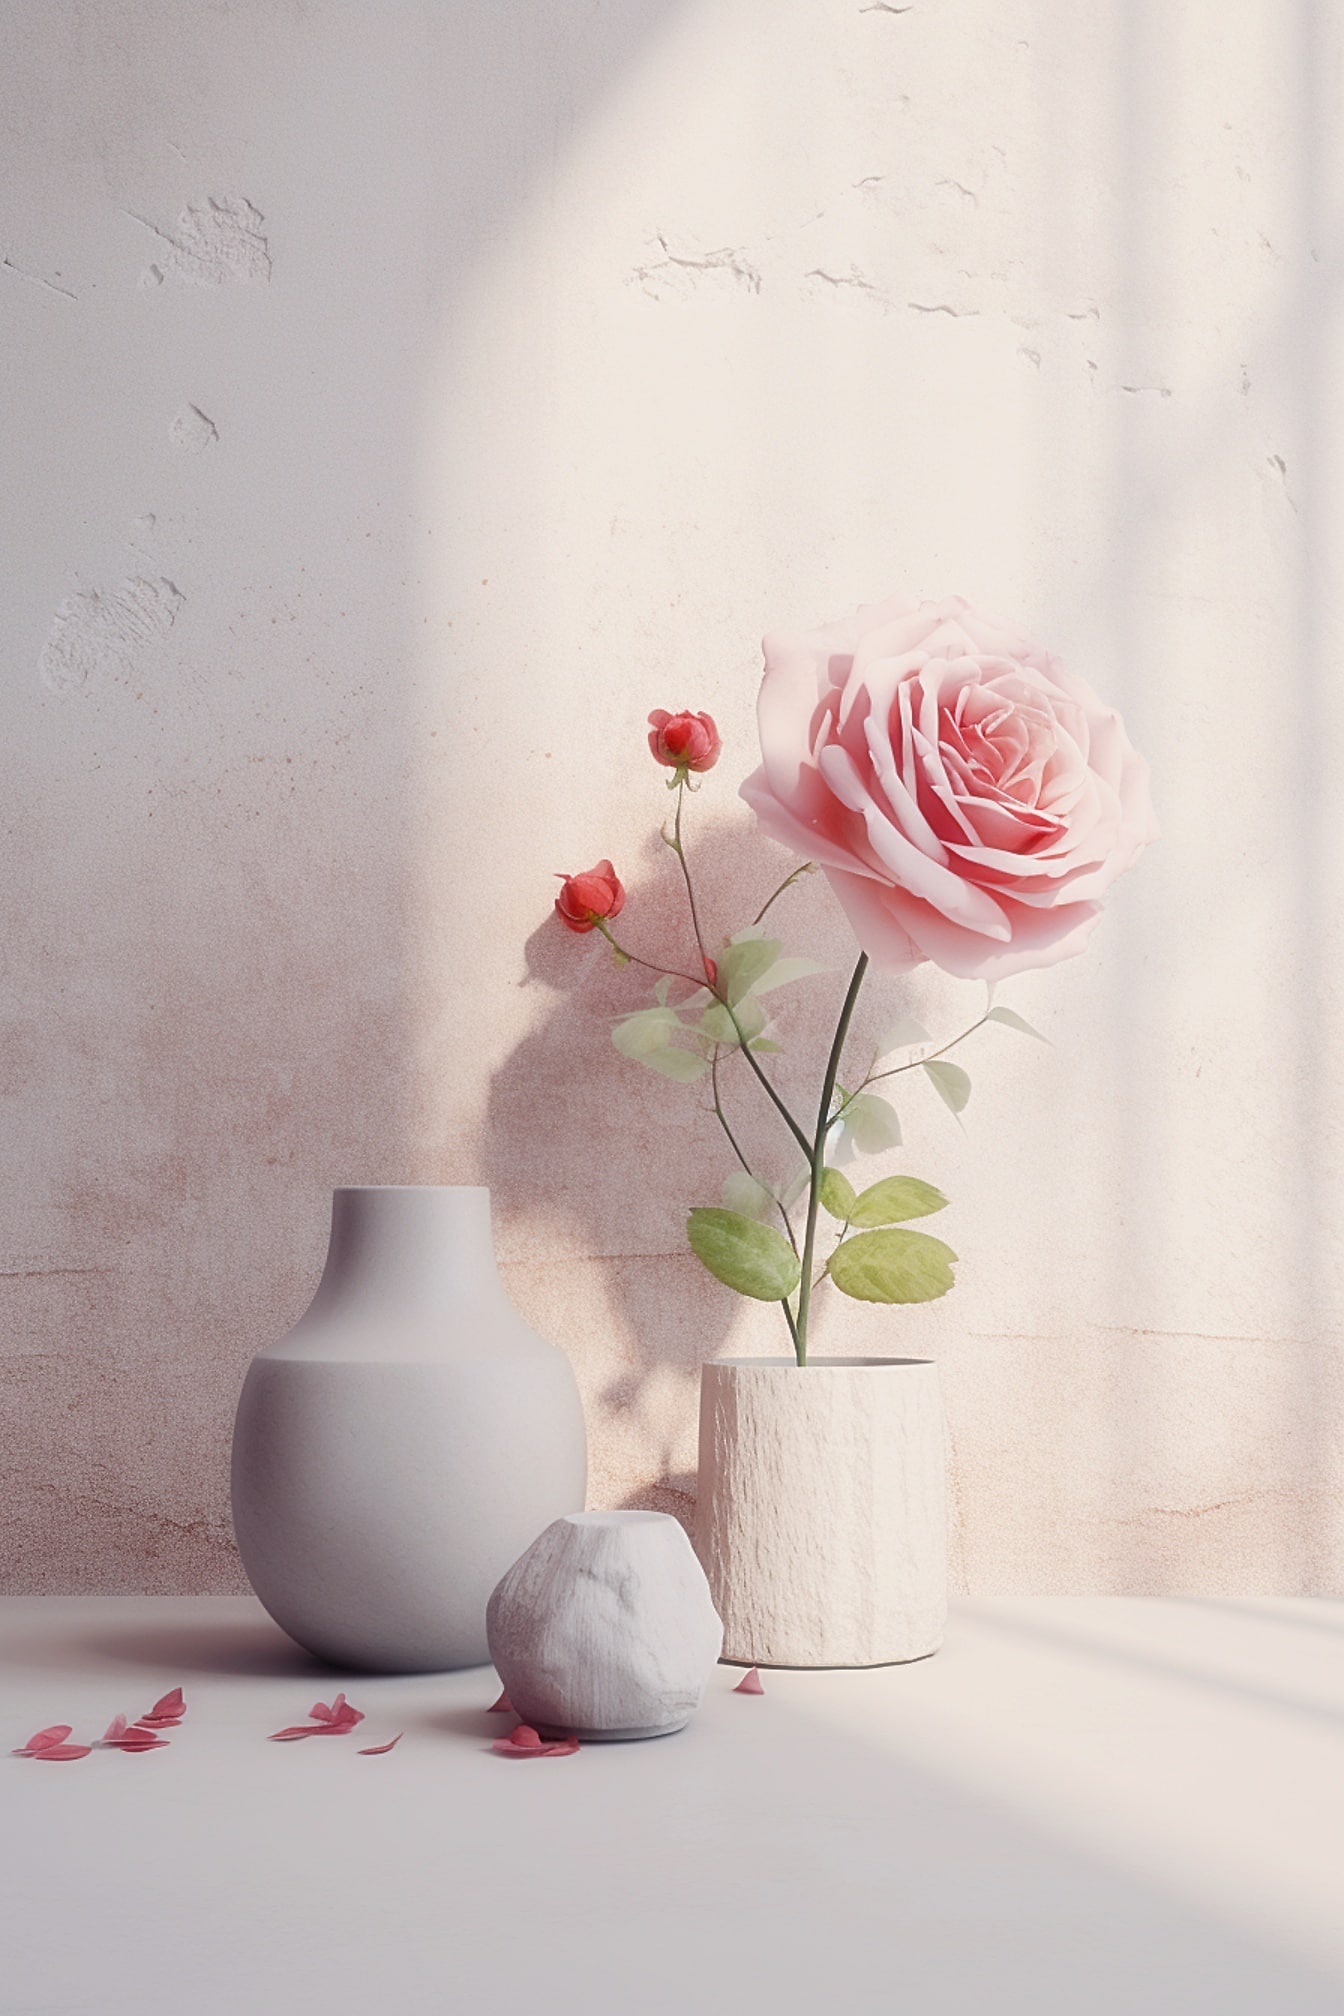 白い石の花瓶に生けられたピンクのバラと、もうひとつの空の花瓶